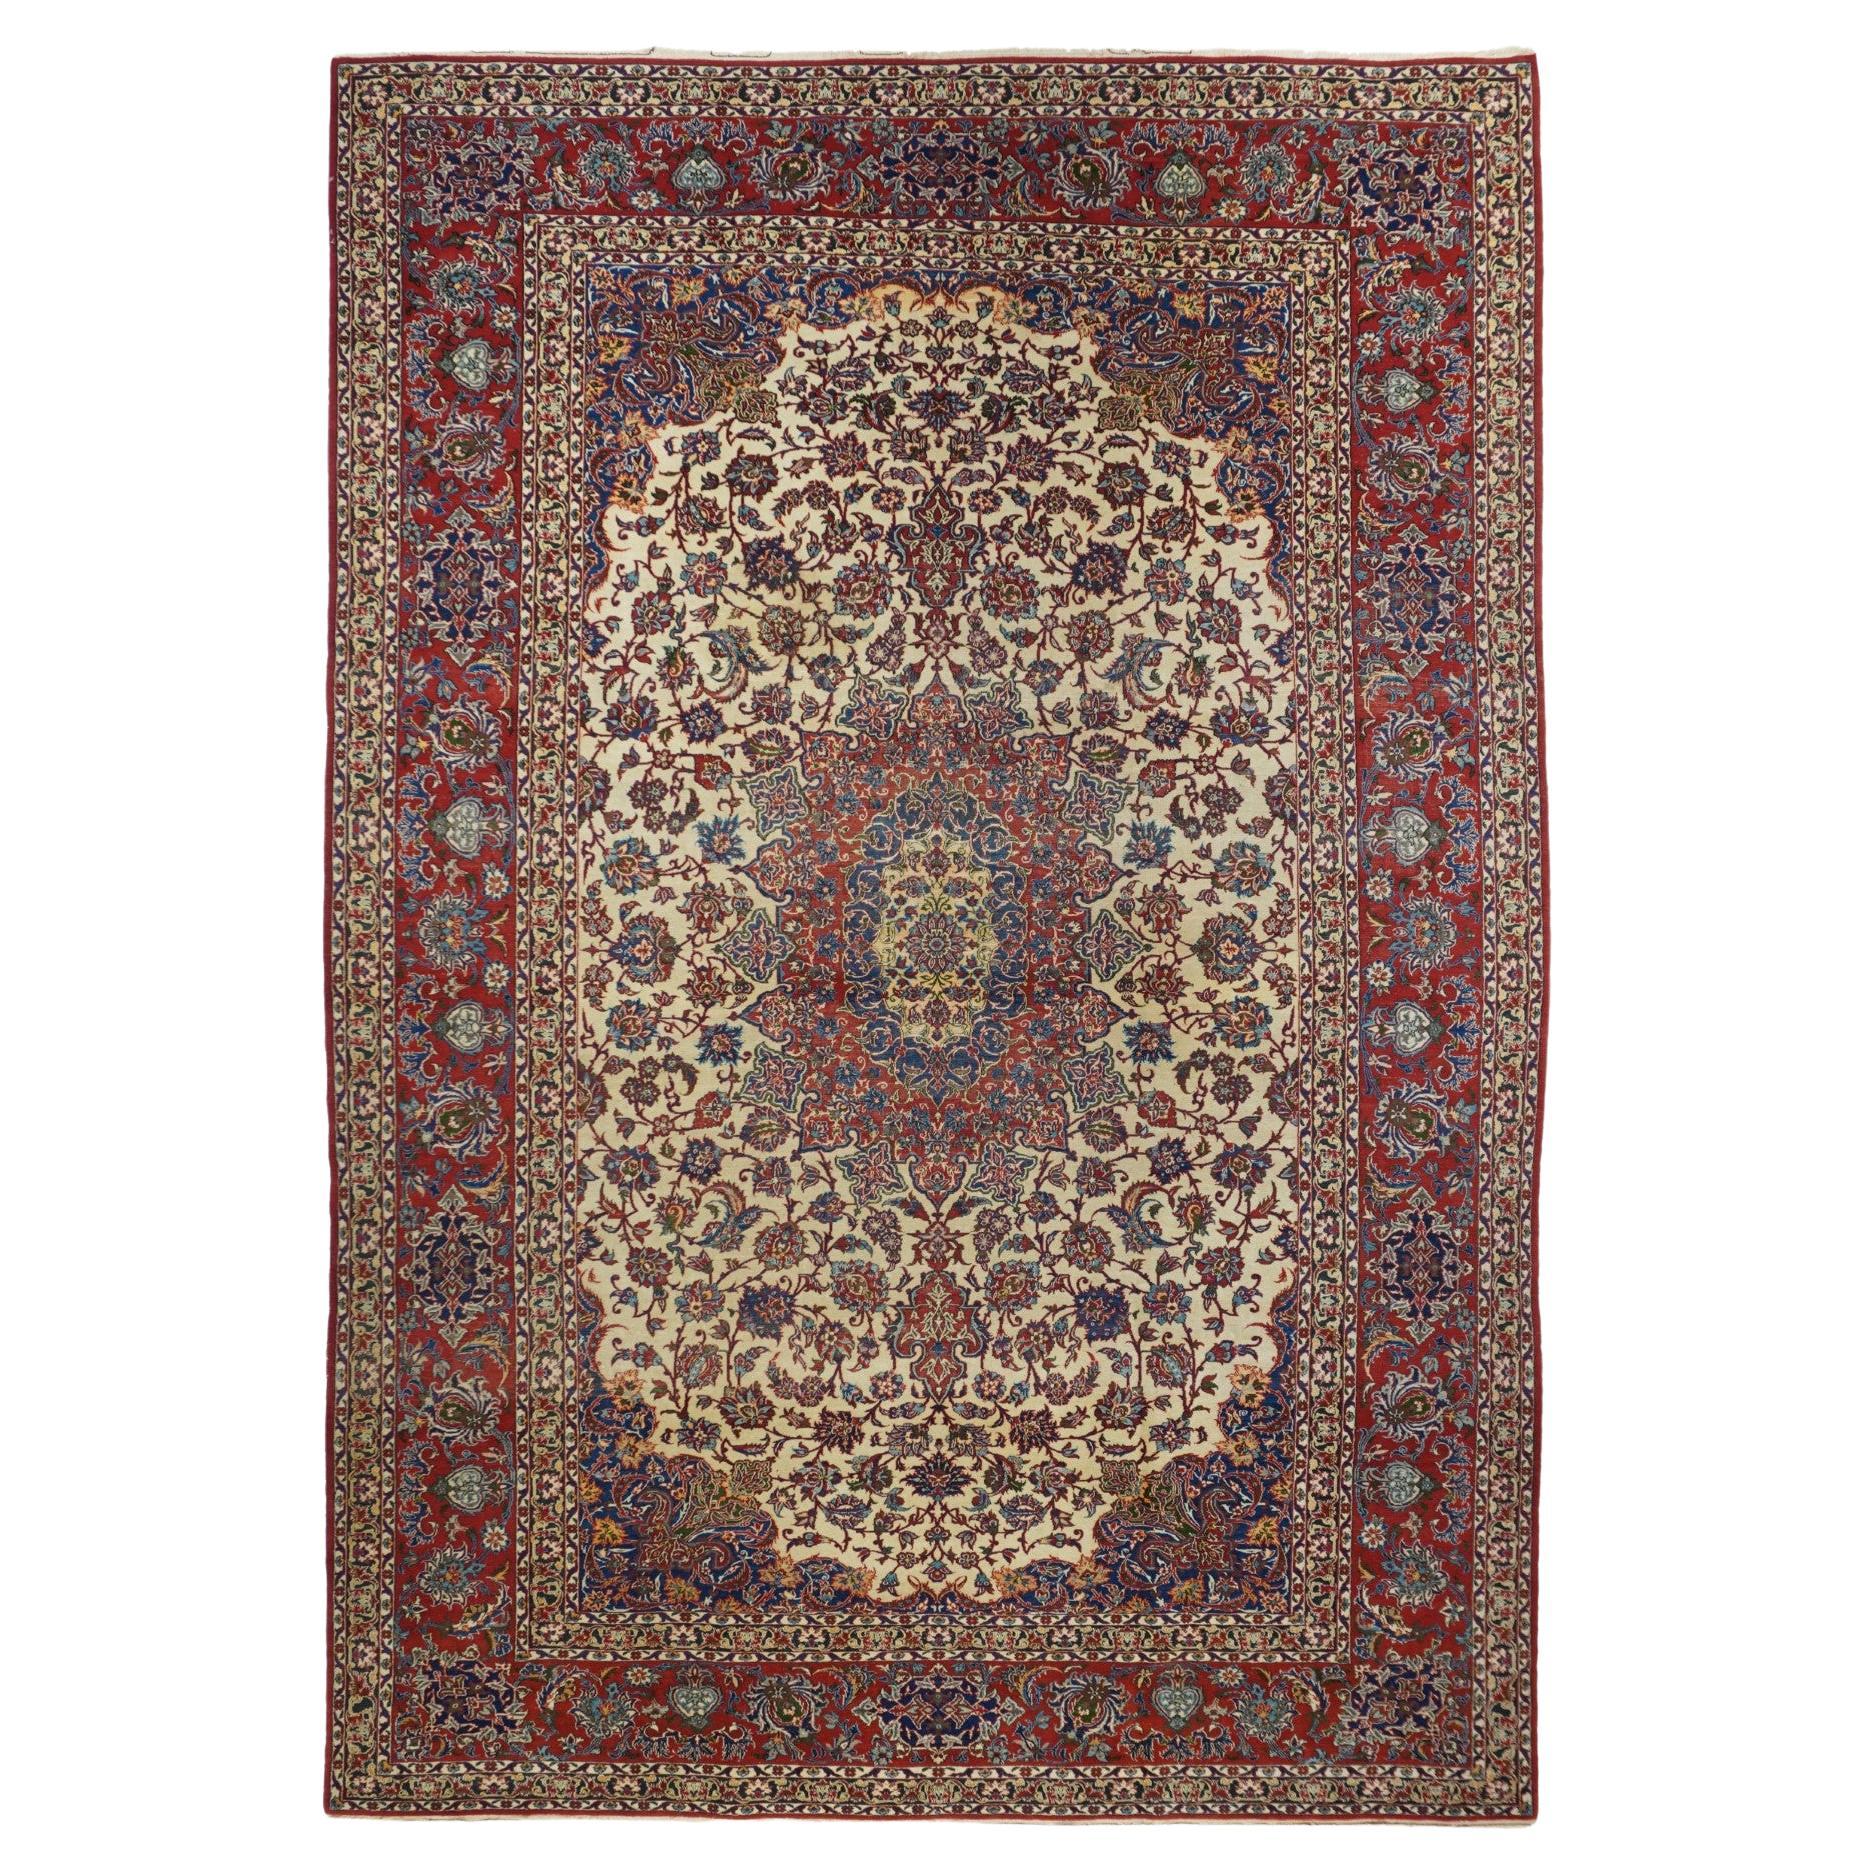 Antiker Isfahan-Teppich 7'3'' x 10'6''